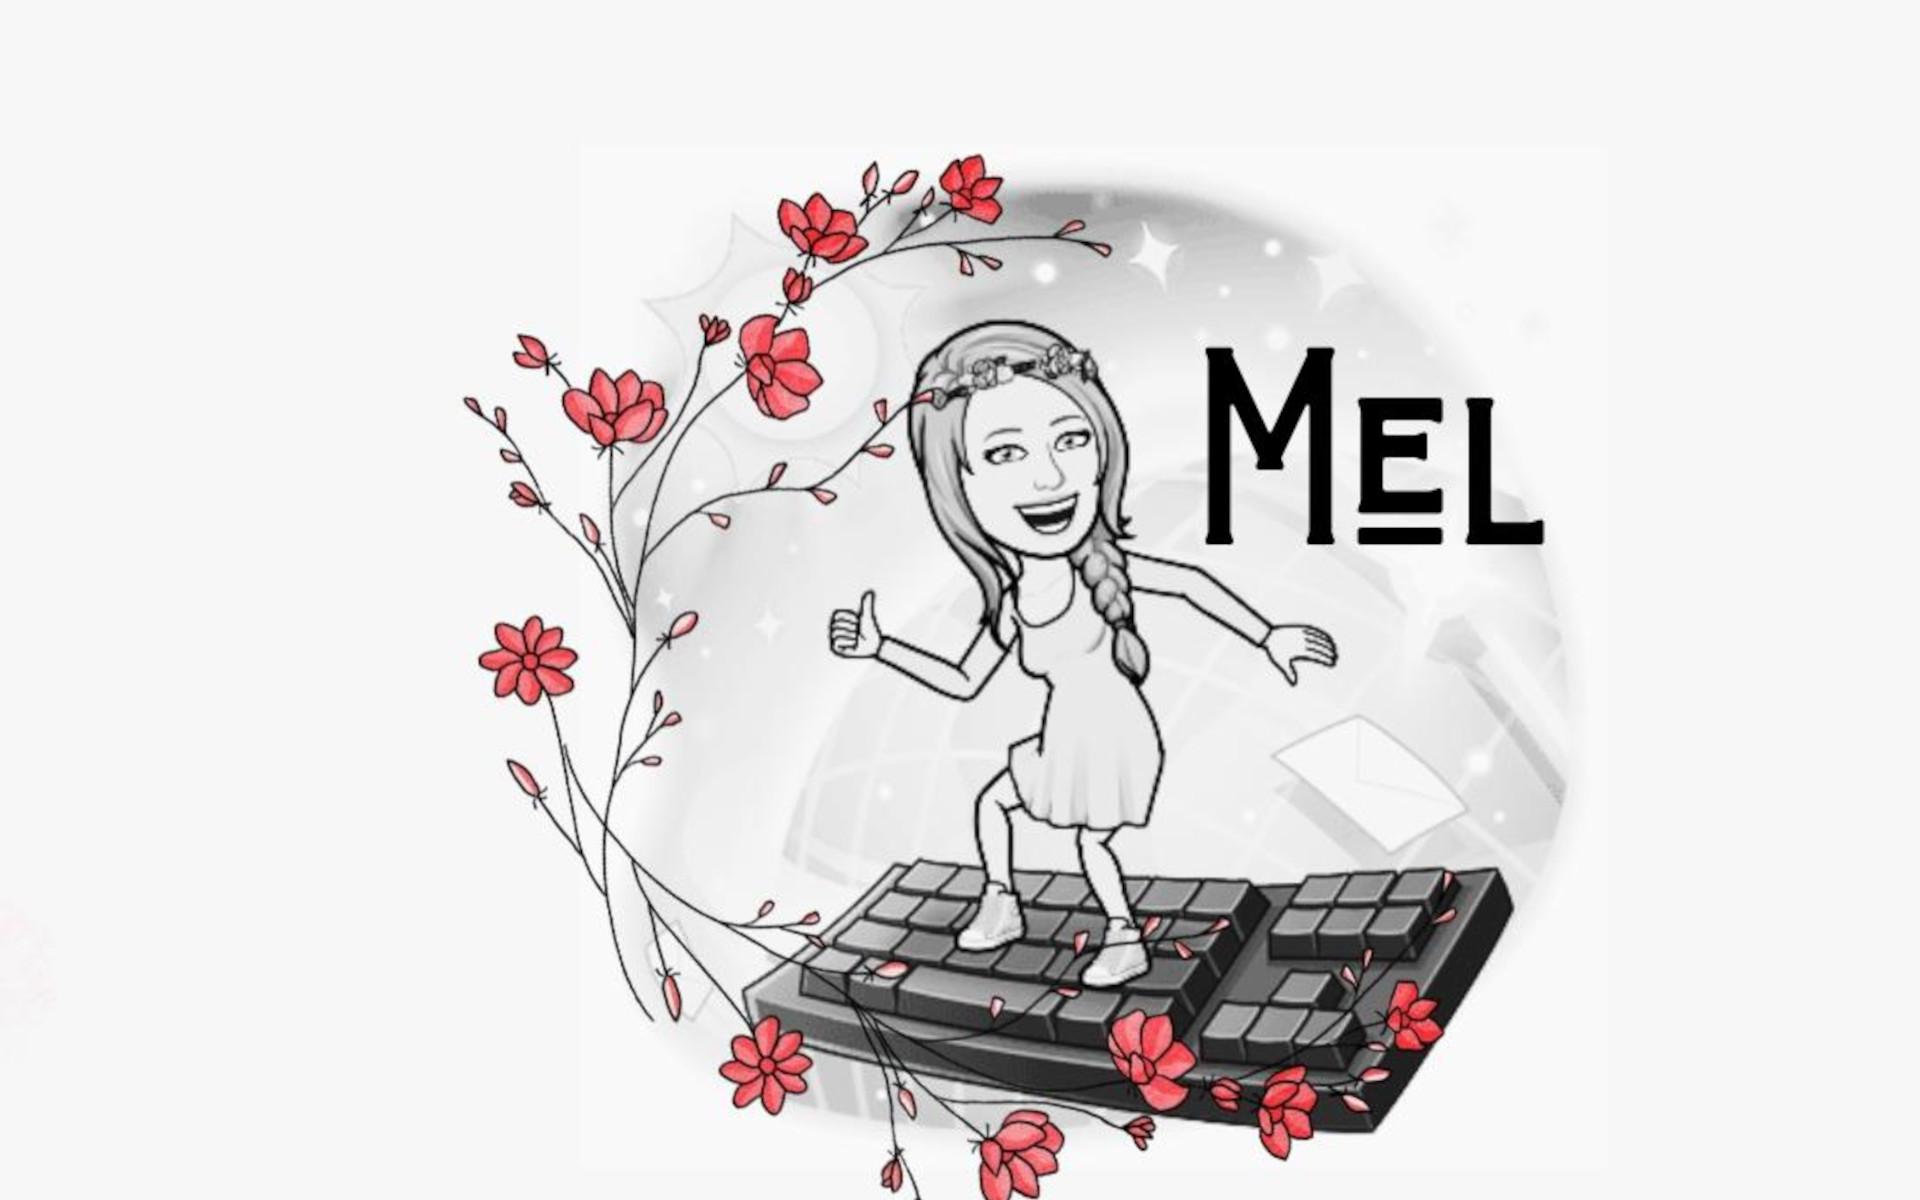 Zeichnung einer Frau im Trägerkleid, mit zum Zopf geflochtenem schulterlangem Haar und einem Blumenkranz als Kopfschmuck, surft auf einer Tastatur als Surfbrett. Links wird das Bild umrahmt von einem Blumenzweig, Rechts steht in großen Lettern "MEL"."